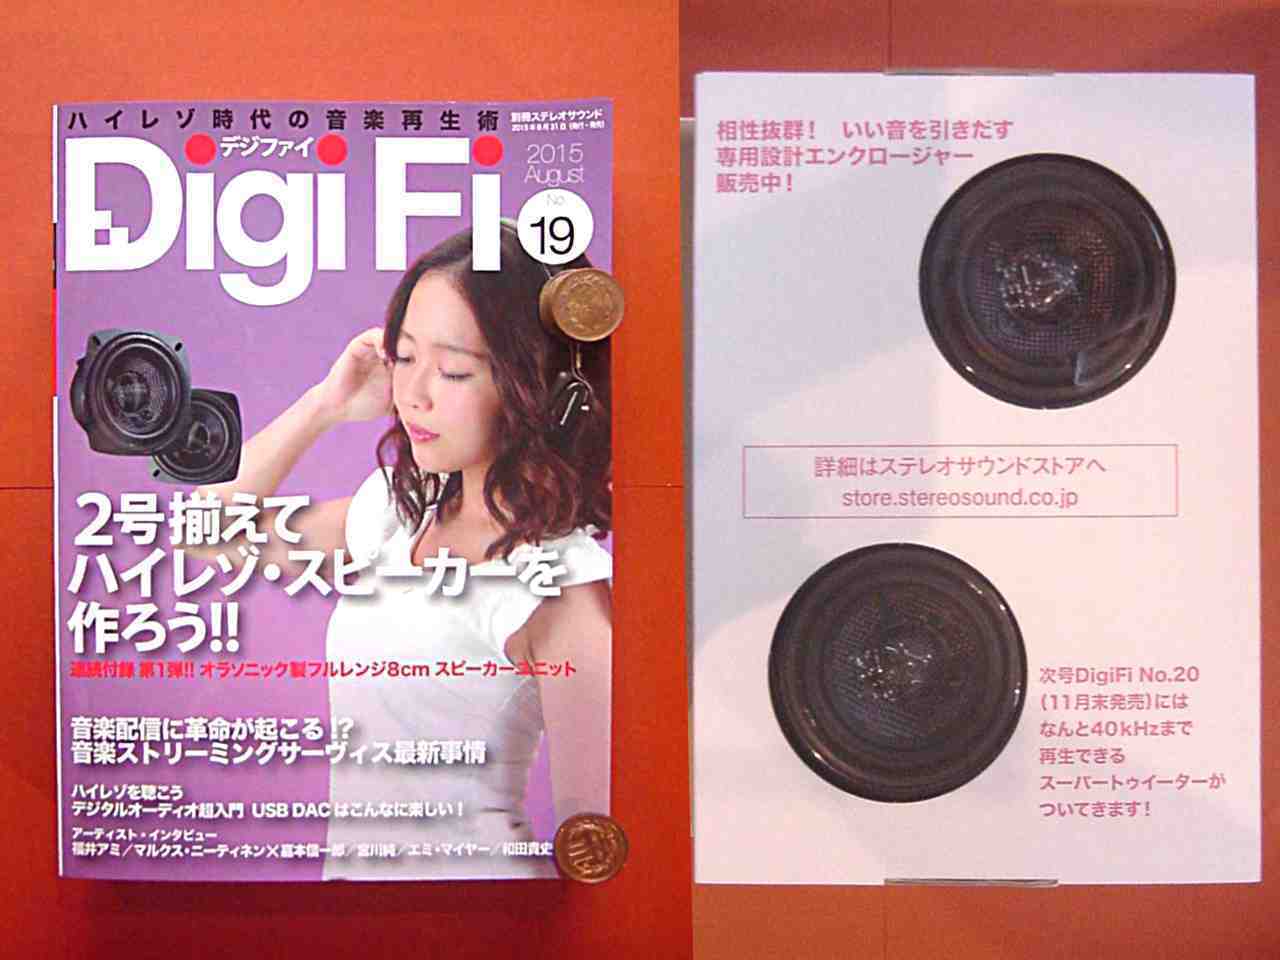 DigiFi No.19 (デジファイNo.19) 付録 ハイレゾ対応 8cmフルレンジスピーカー ユニット（グラスファイバー製）を購入、検証しました  ２: 加藤ちゃんの日記